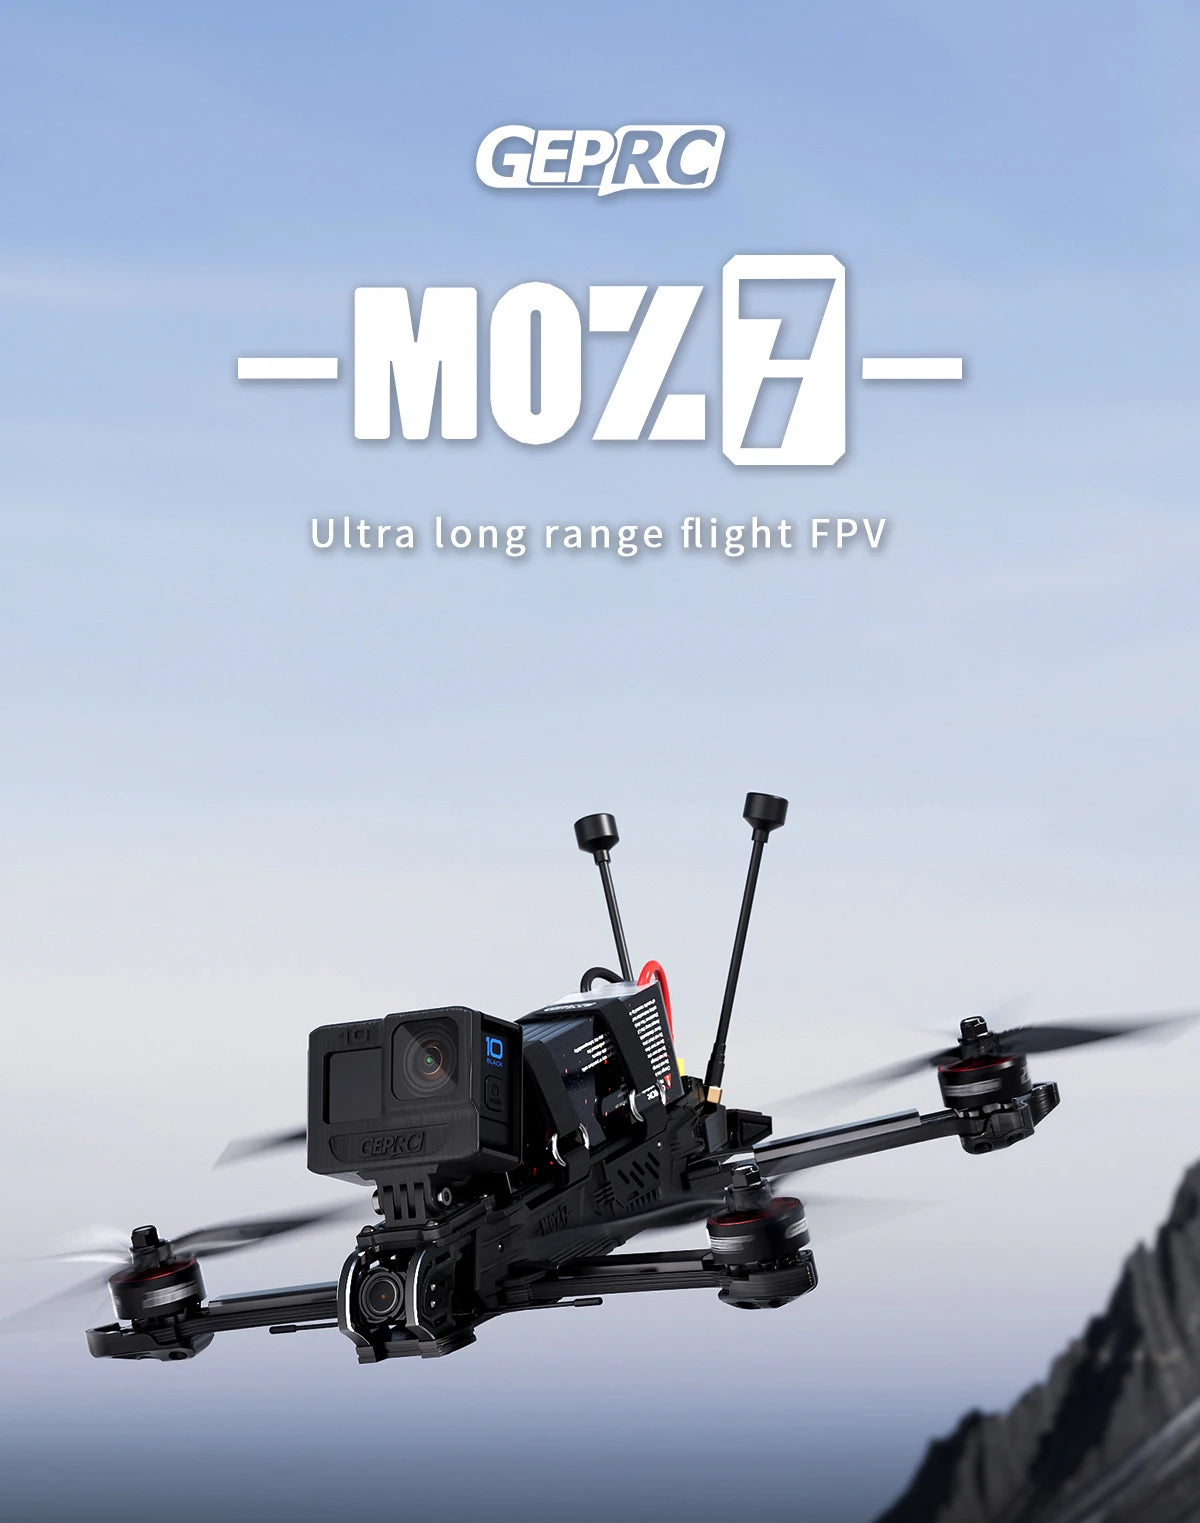 GEPRC MOZ7 HD - Wasp Long Range FPV, GEPRC MOZ7 HD, GEPRC MOIH Ultra range flight FPV GEPRO